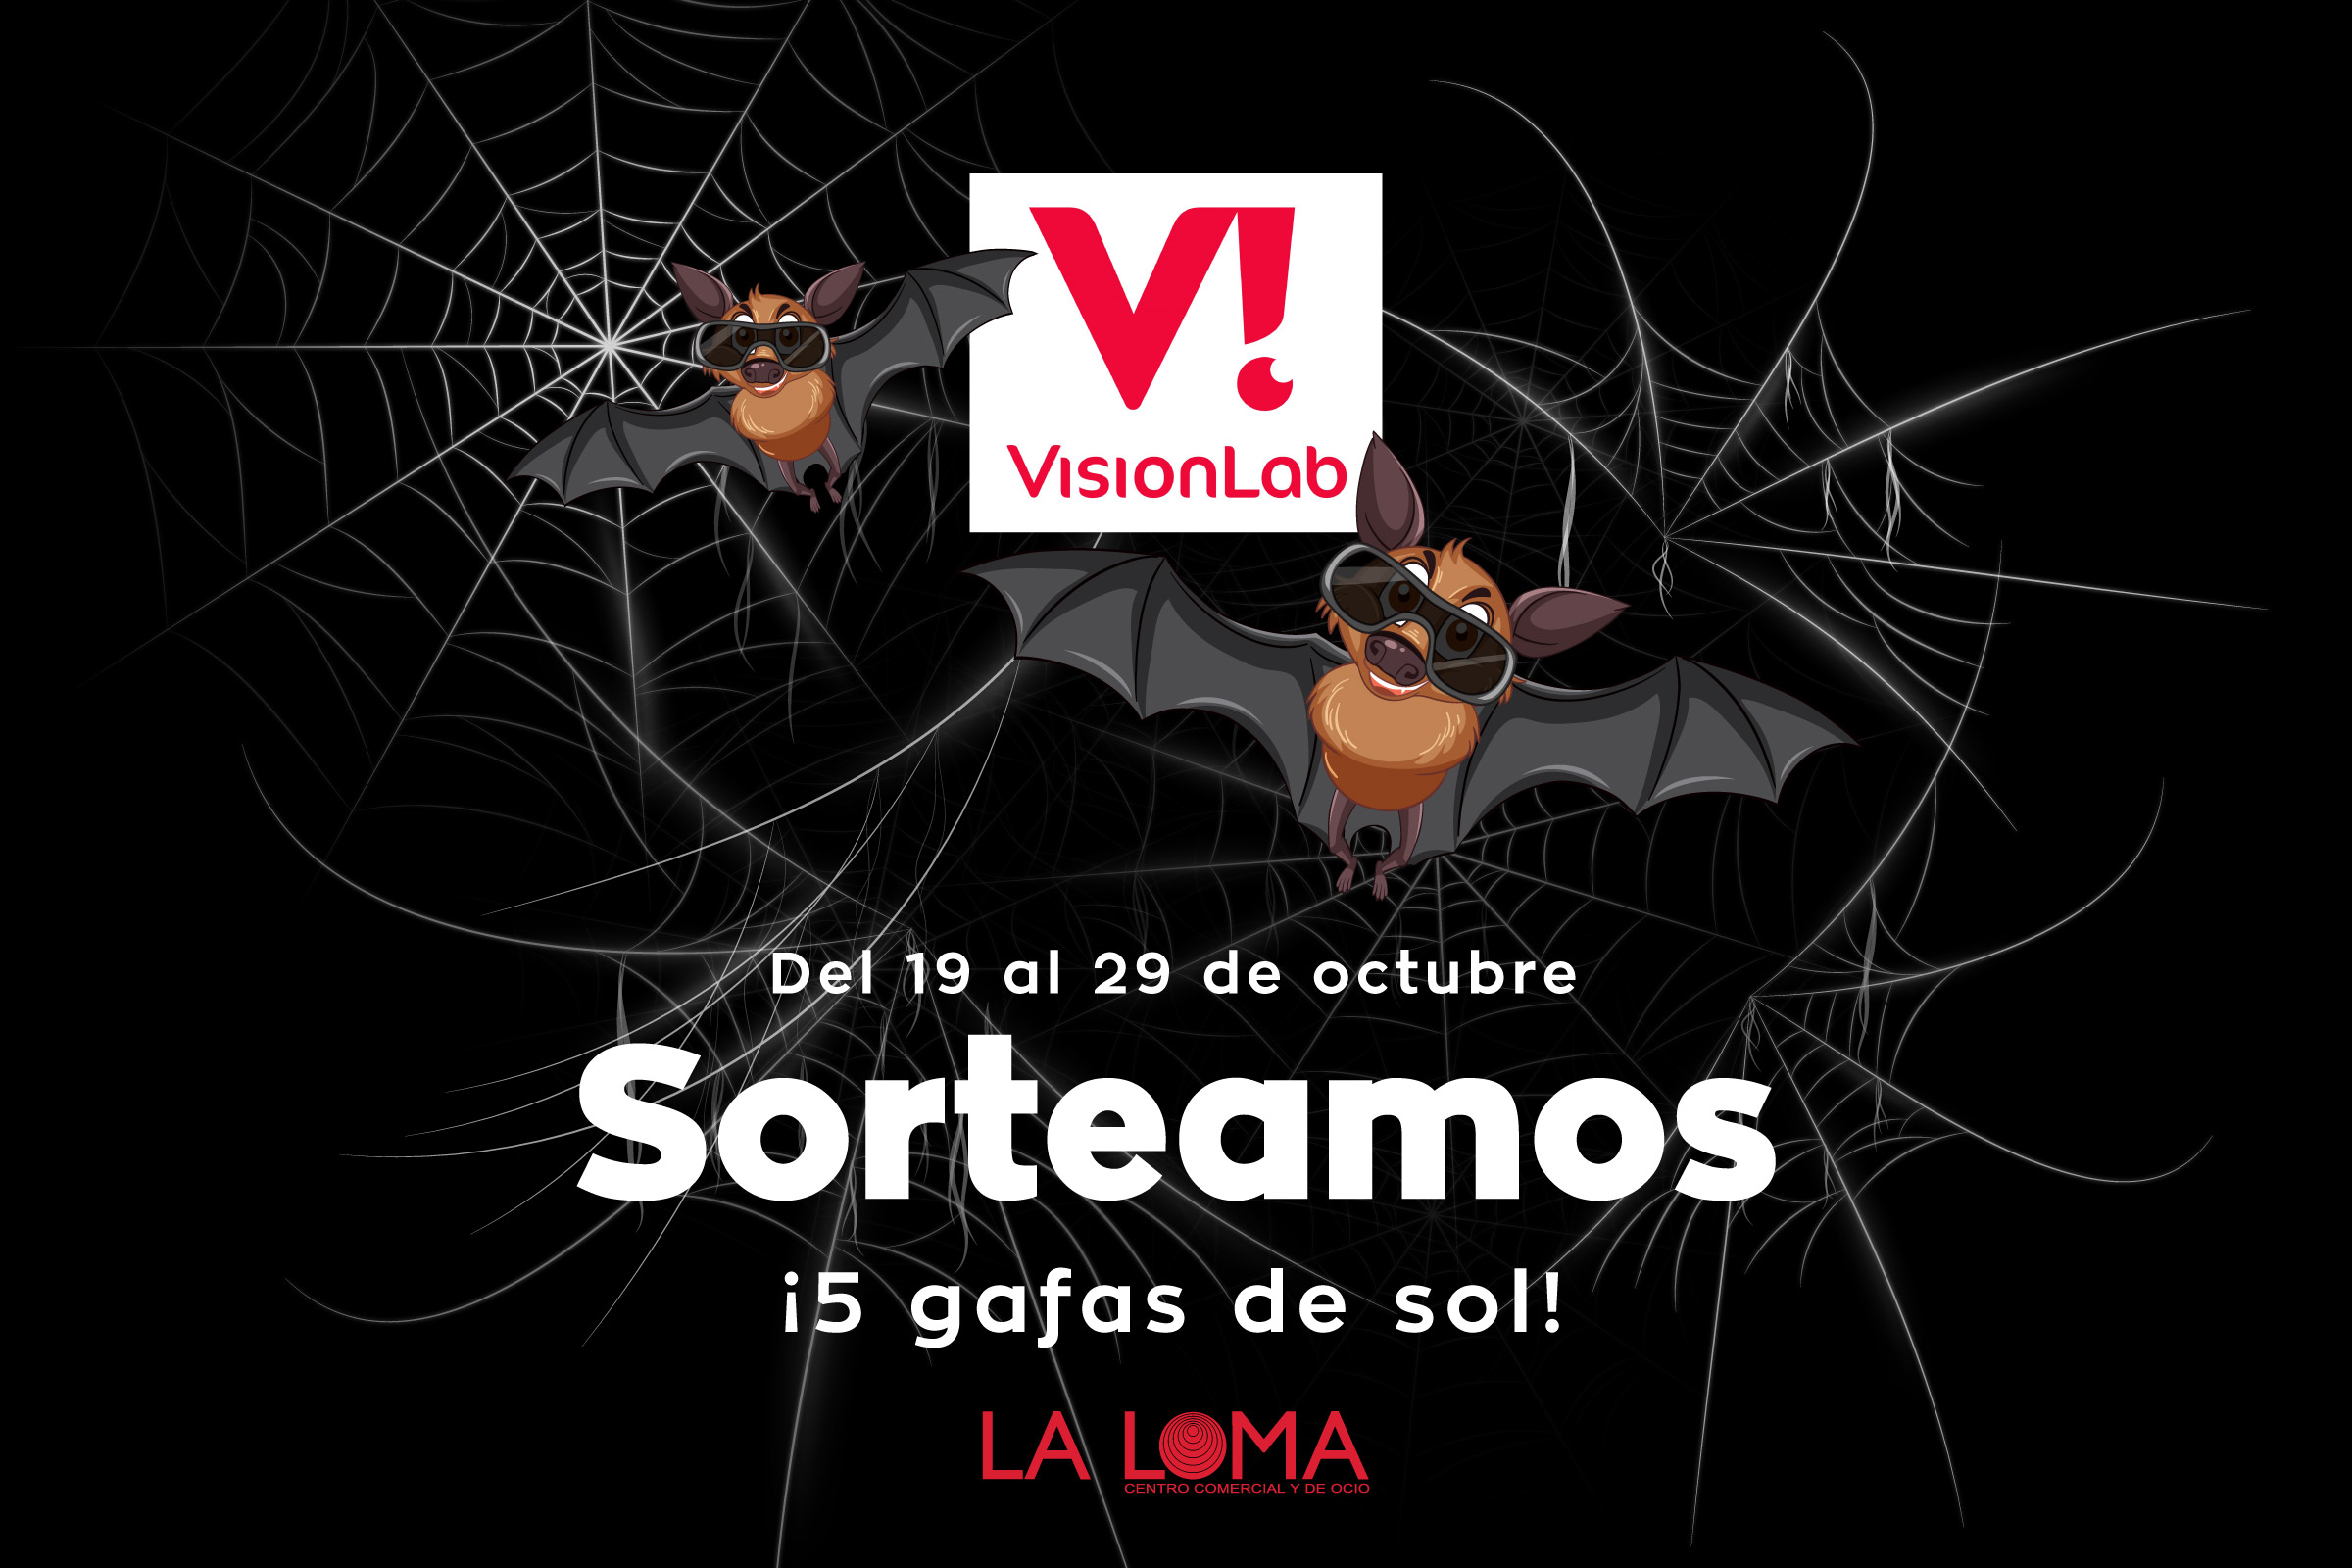 Sorteo de 5 gafas de sol de Visionlab - Centro Comercial y de Ocio La Loma